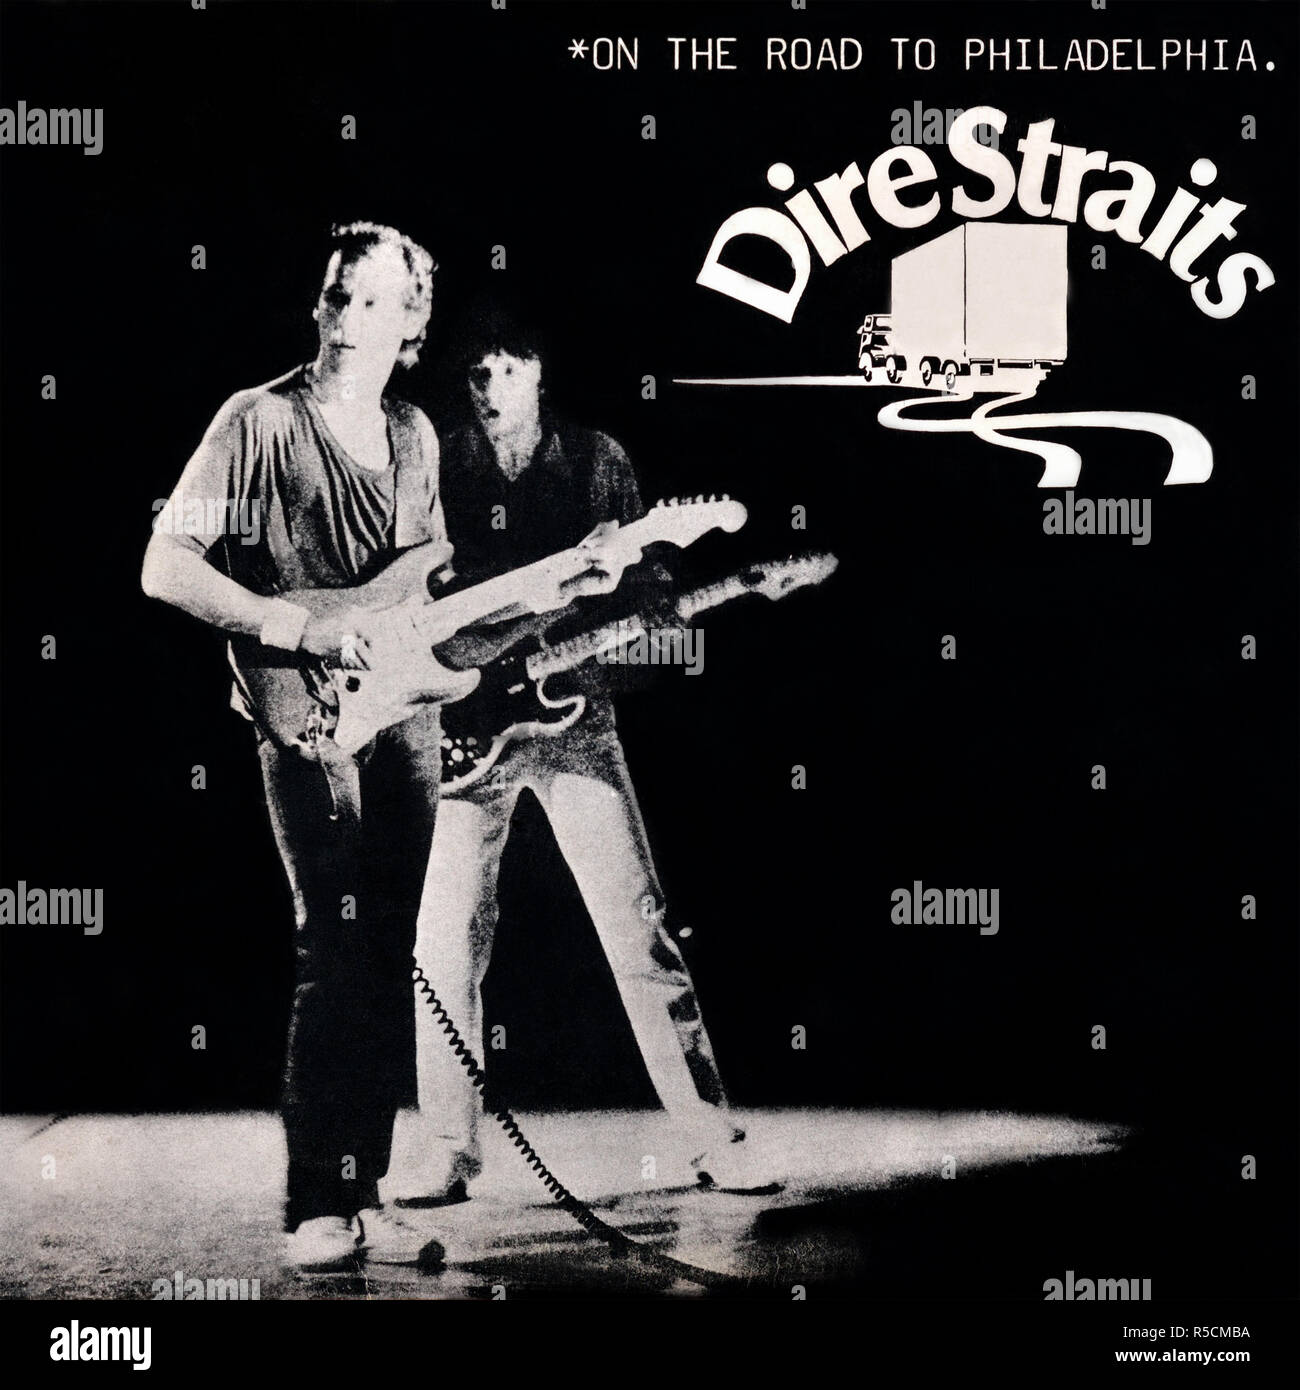 Dire Straits - couverture originale de l'album de vinyle - sur la route de Philadelphie - 1979 Banque D'Images